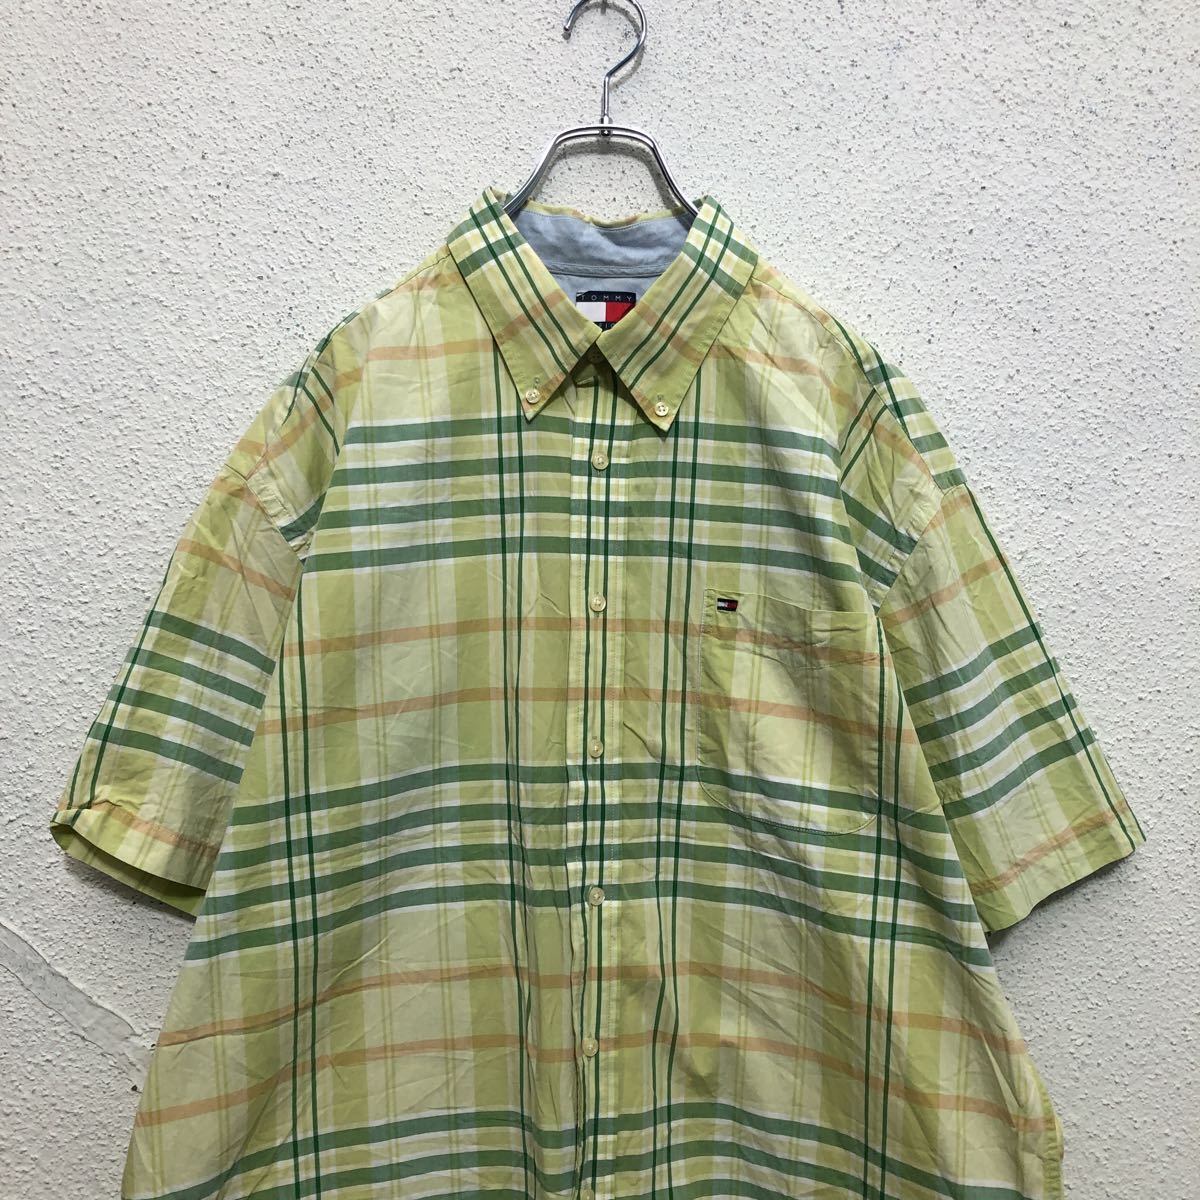 【大人気☆】トミーヒルフィガー 半袖チェックシャツ ミリタリー グリーン XL